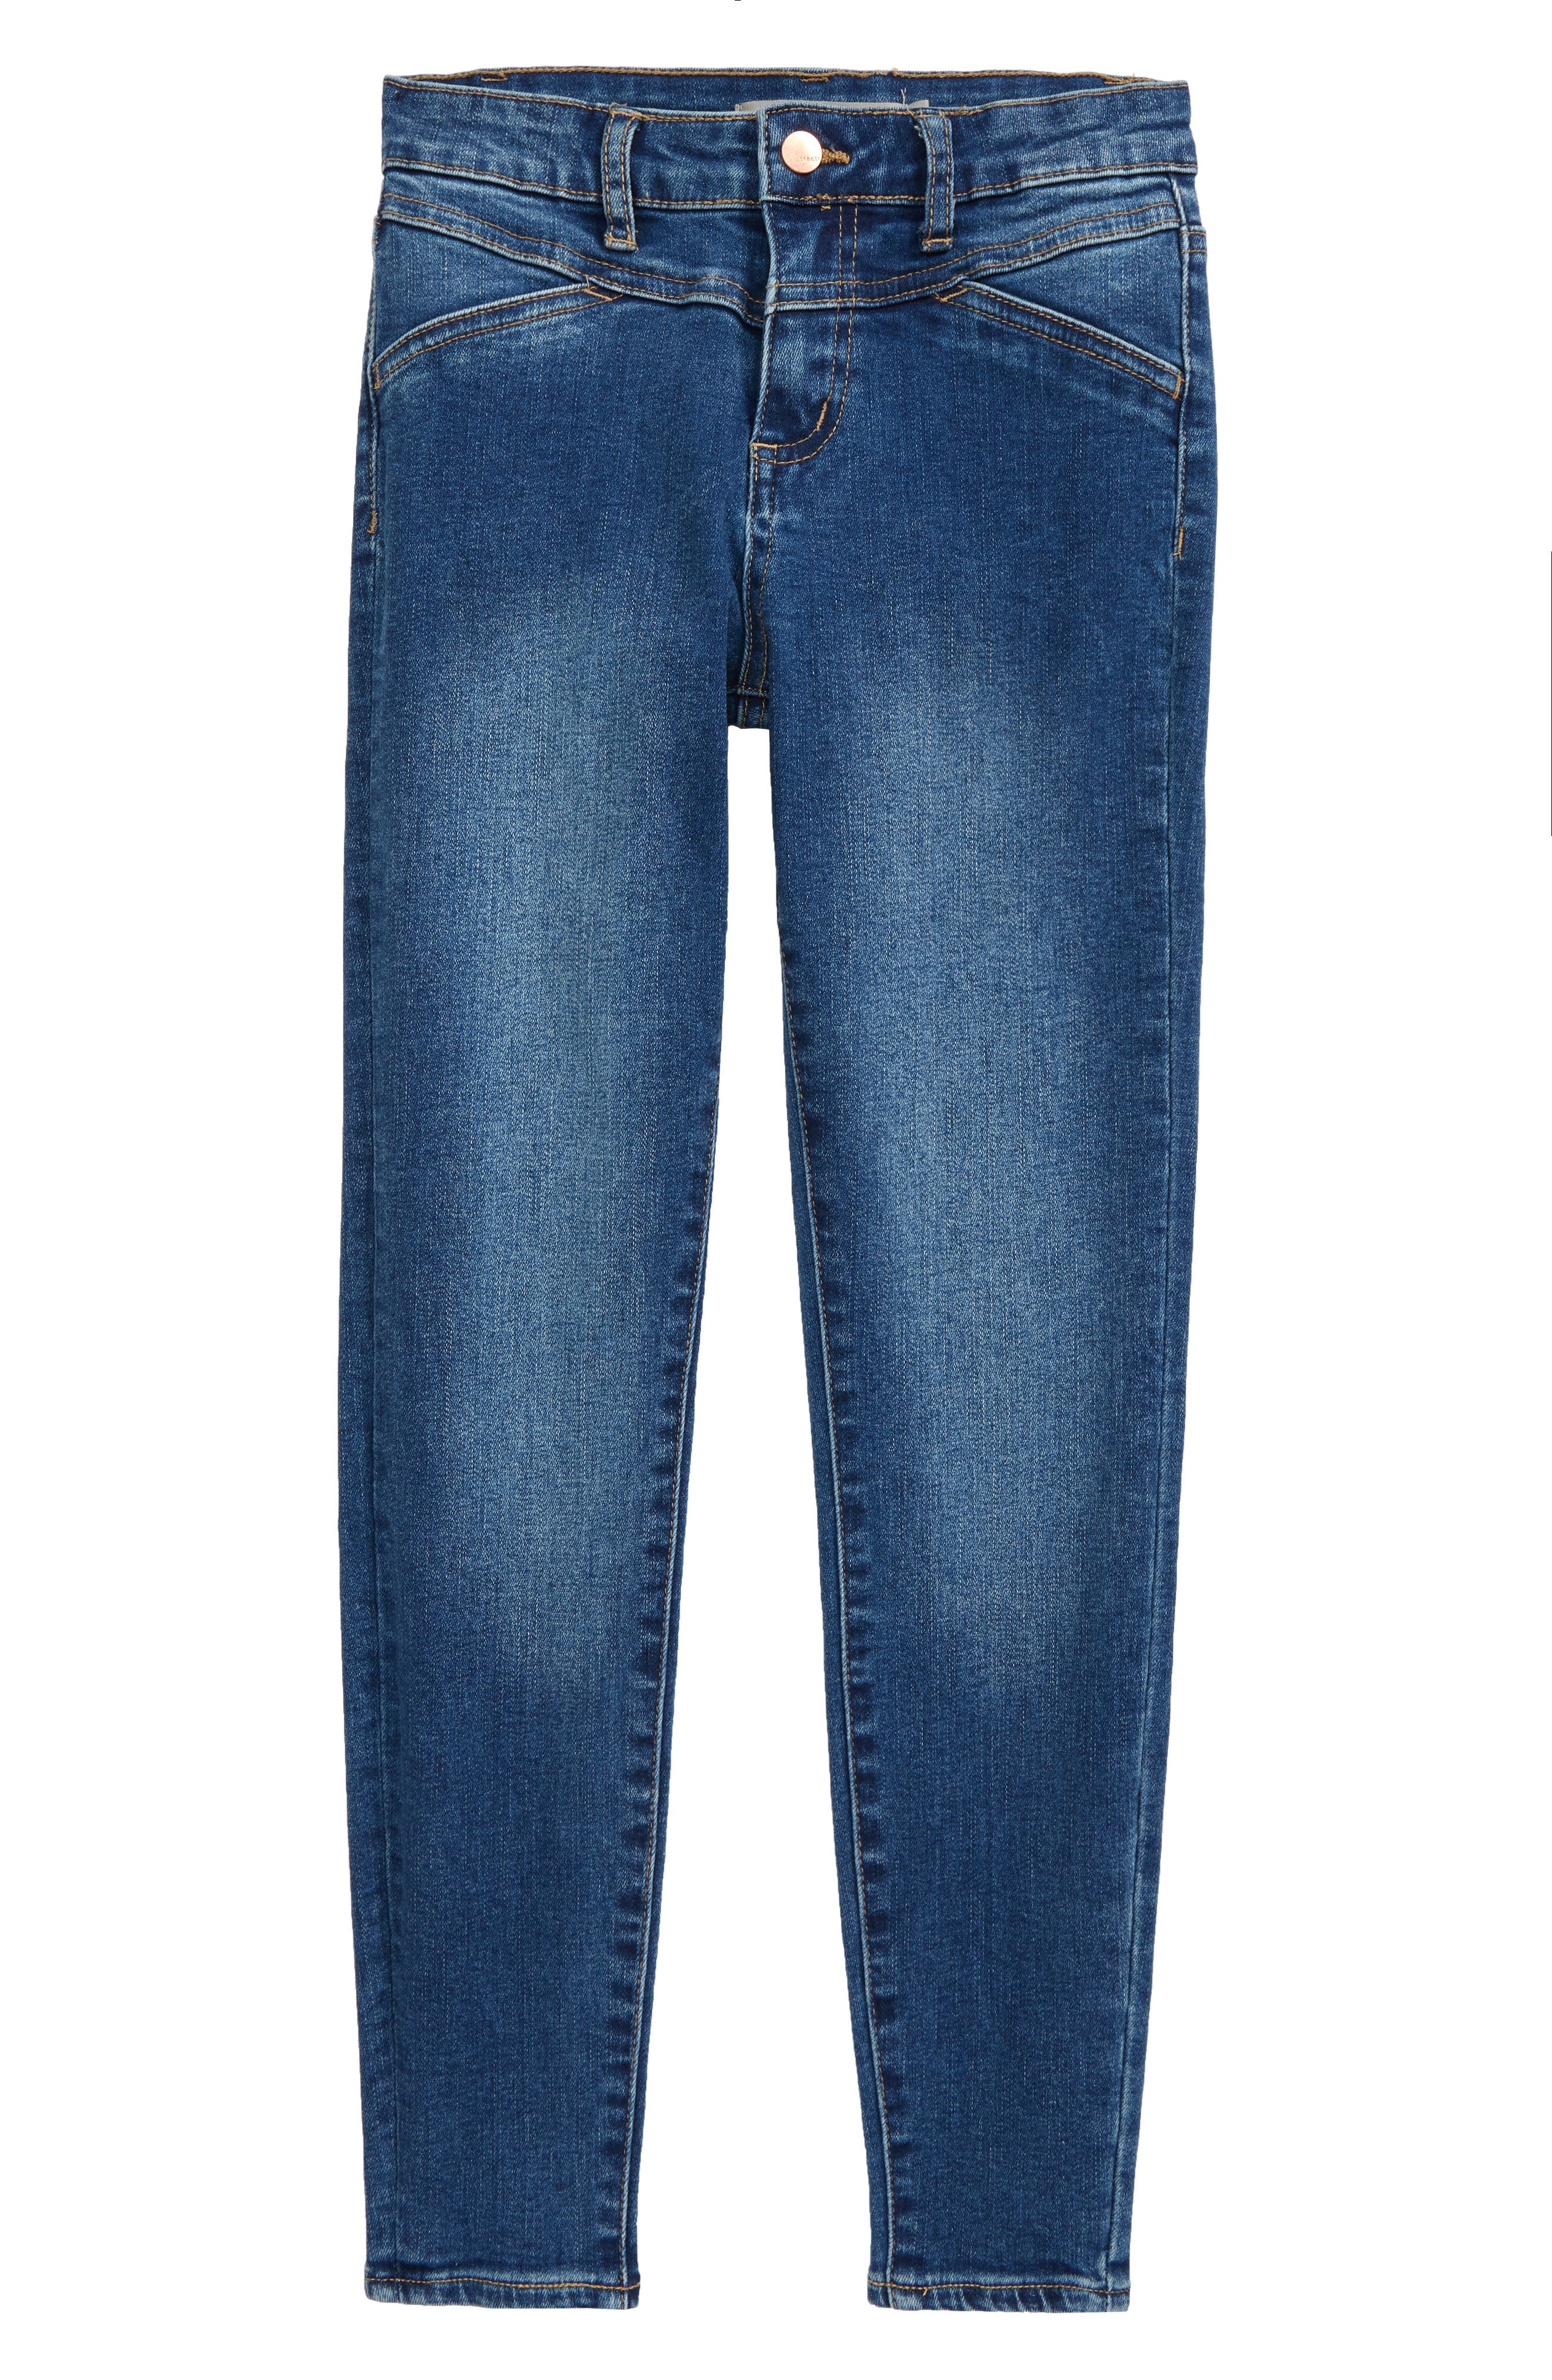 best jeans for tweens